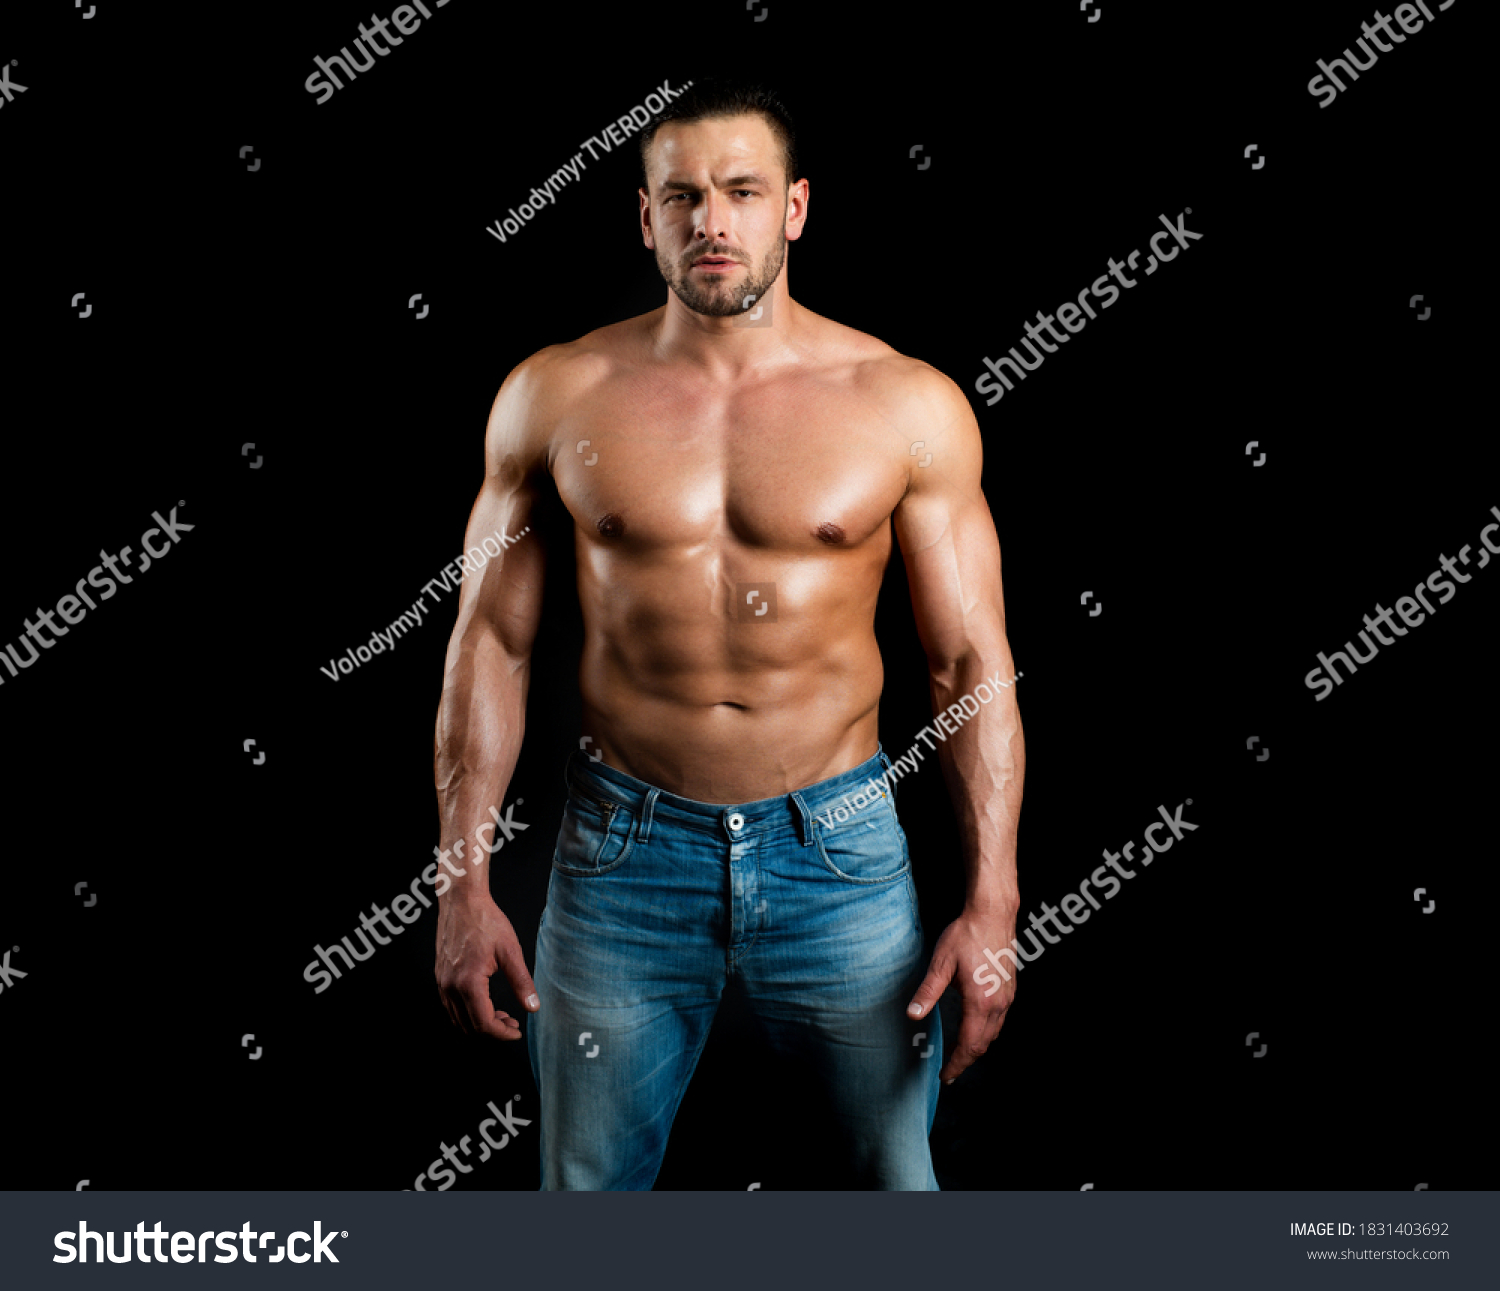 Topless Shirtless Male Model Naked Bodybuilder Foto Stok Shutterstock